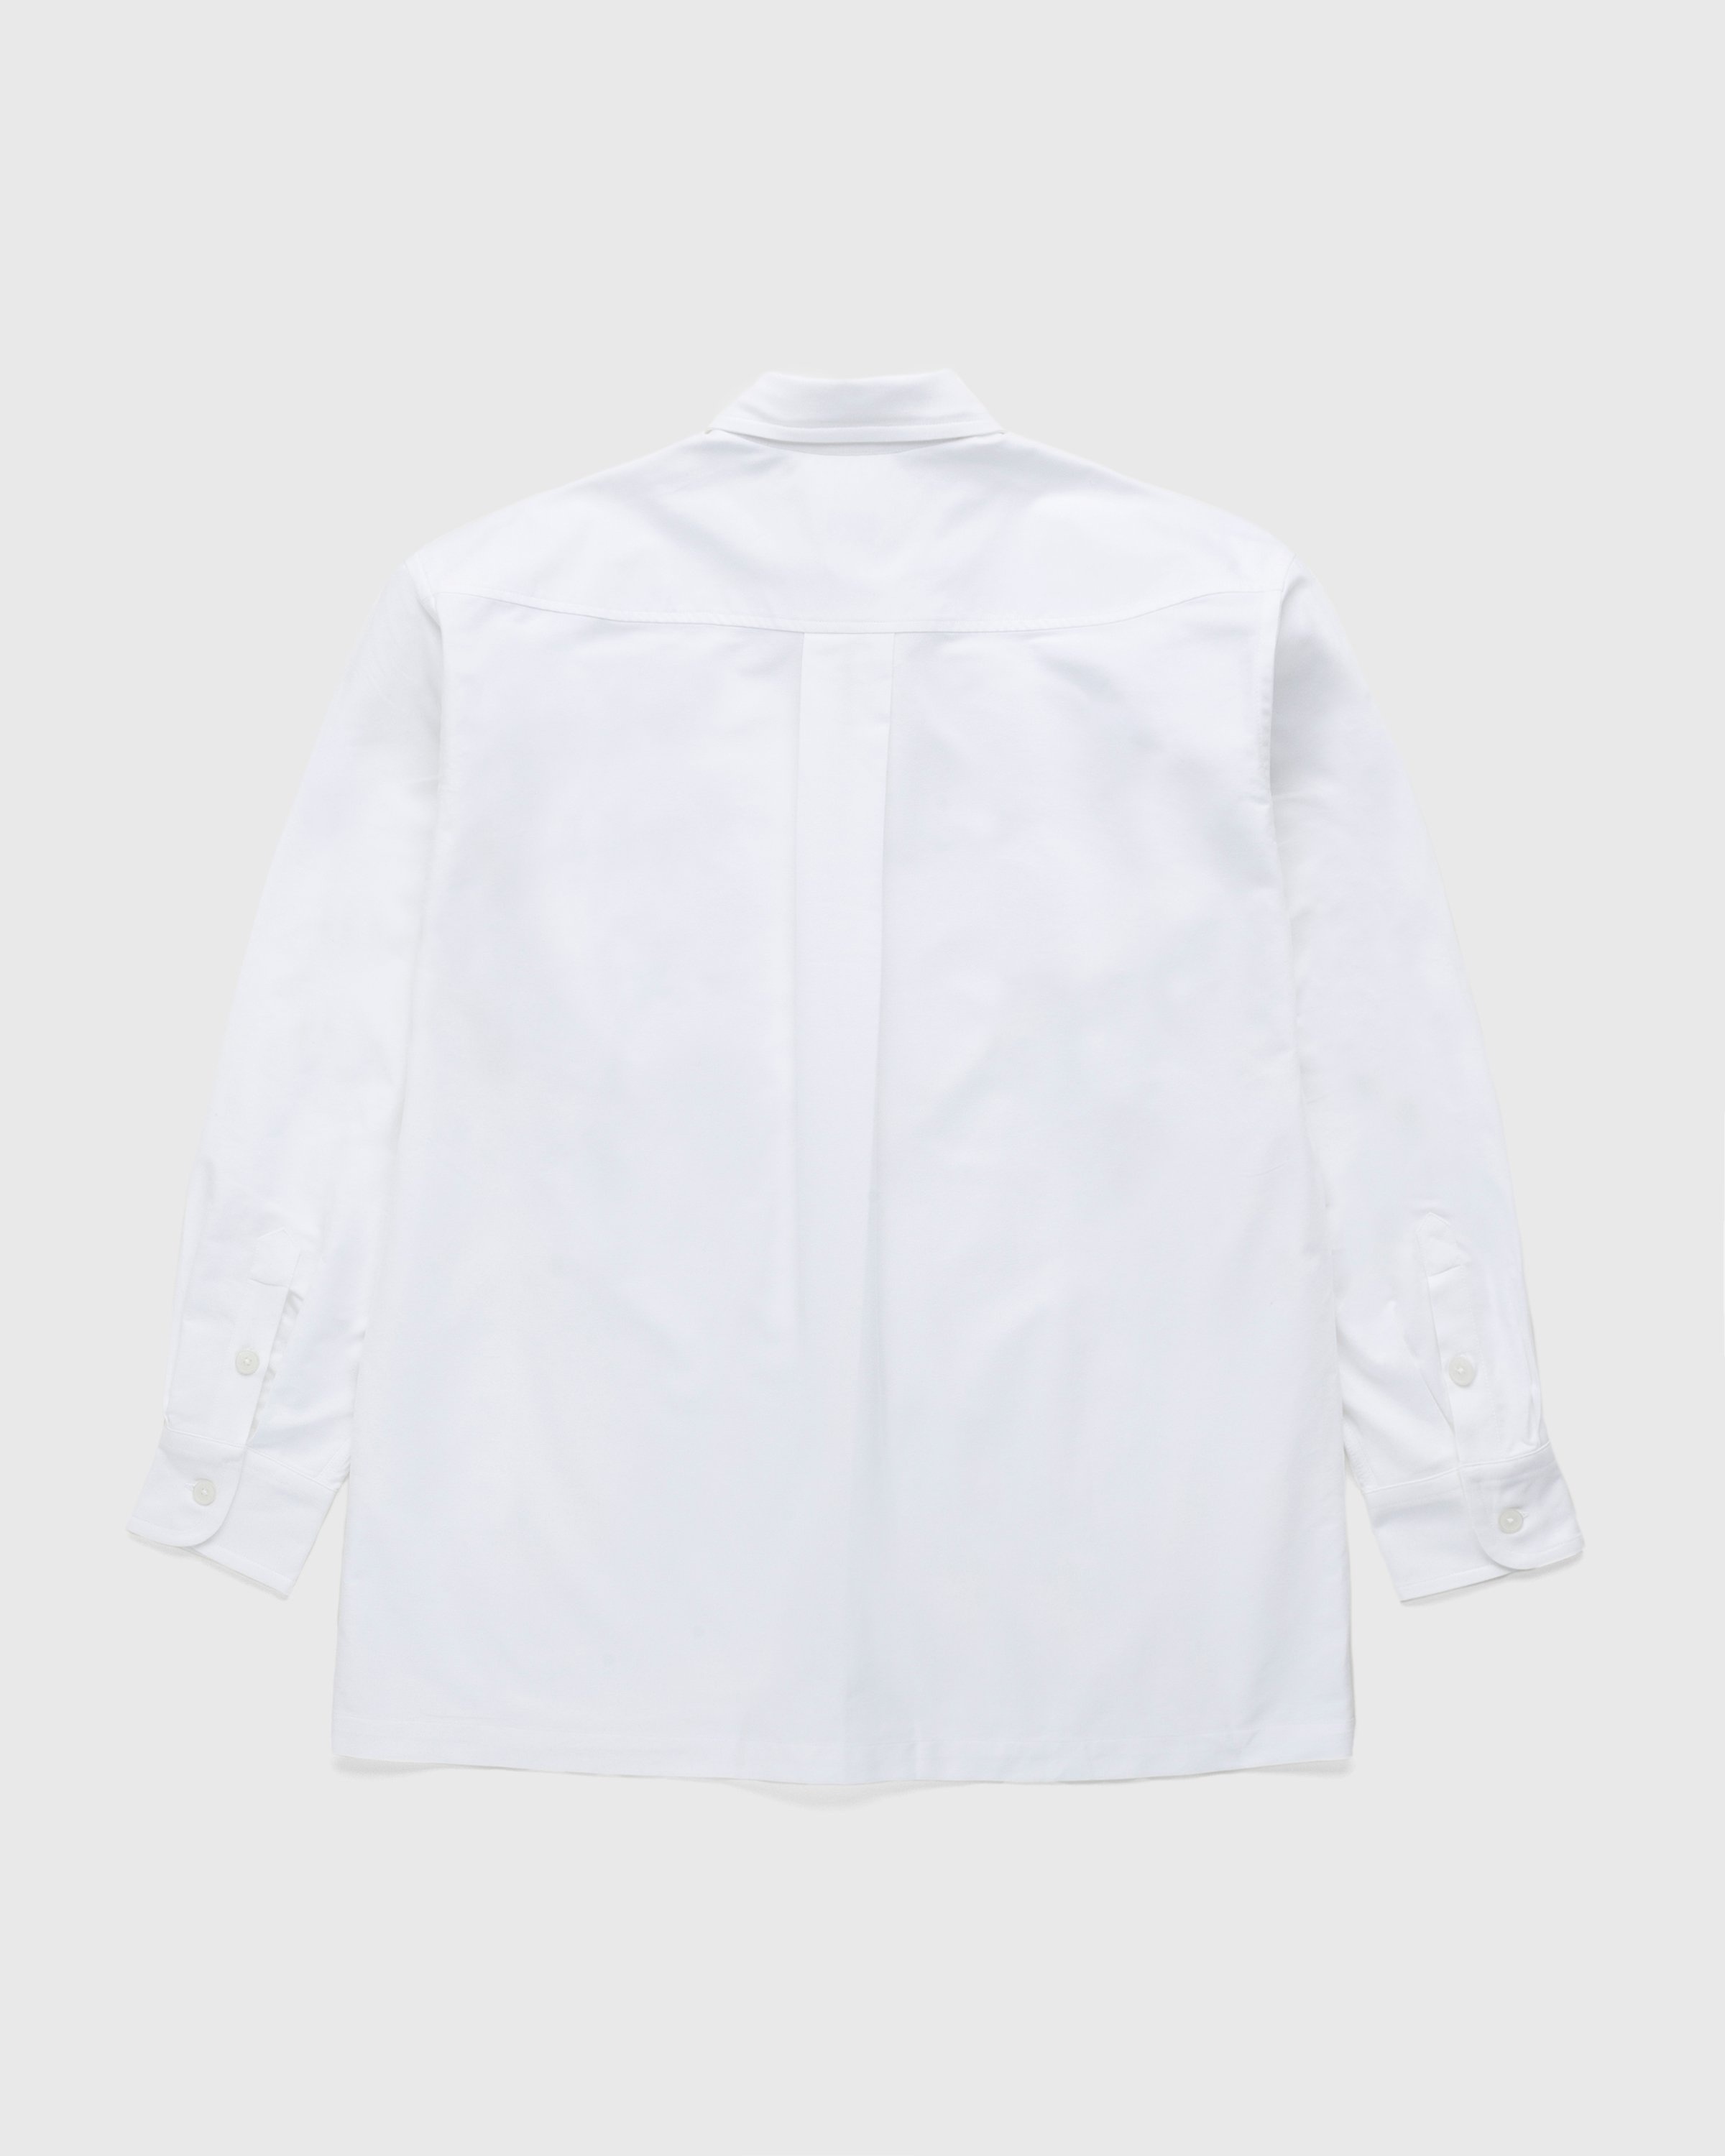 Kenzo – Boke Flower Crest Overshirt White - Longsleeve Shirts - White - Image 2